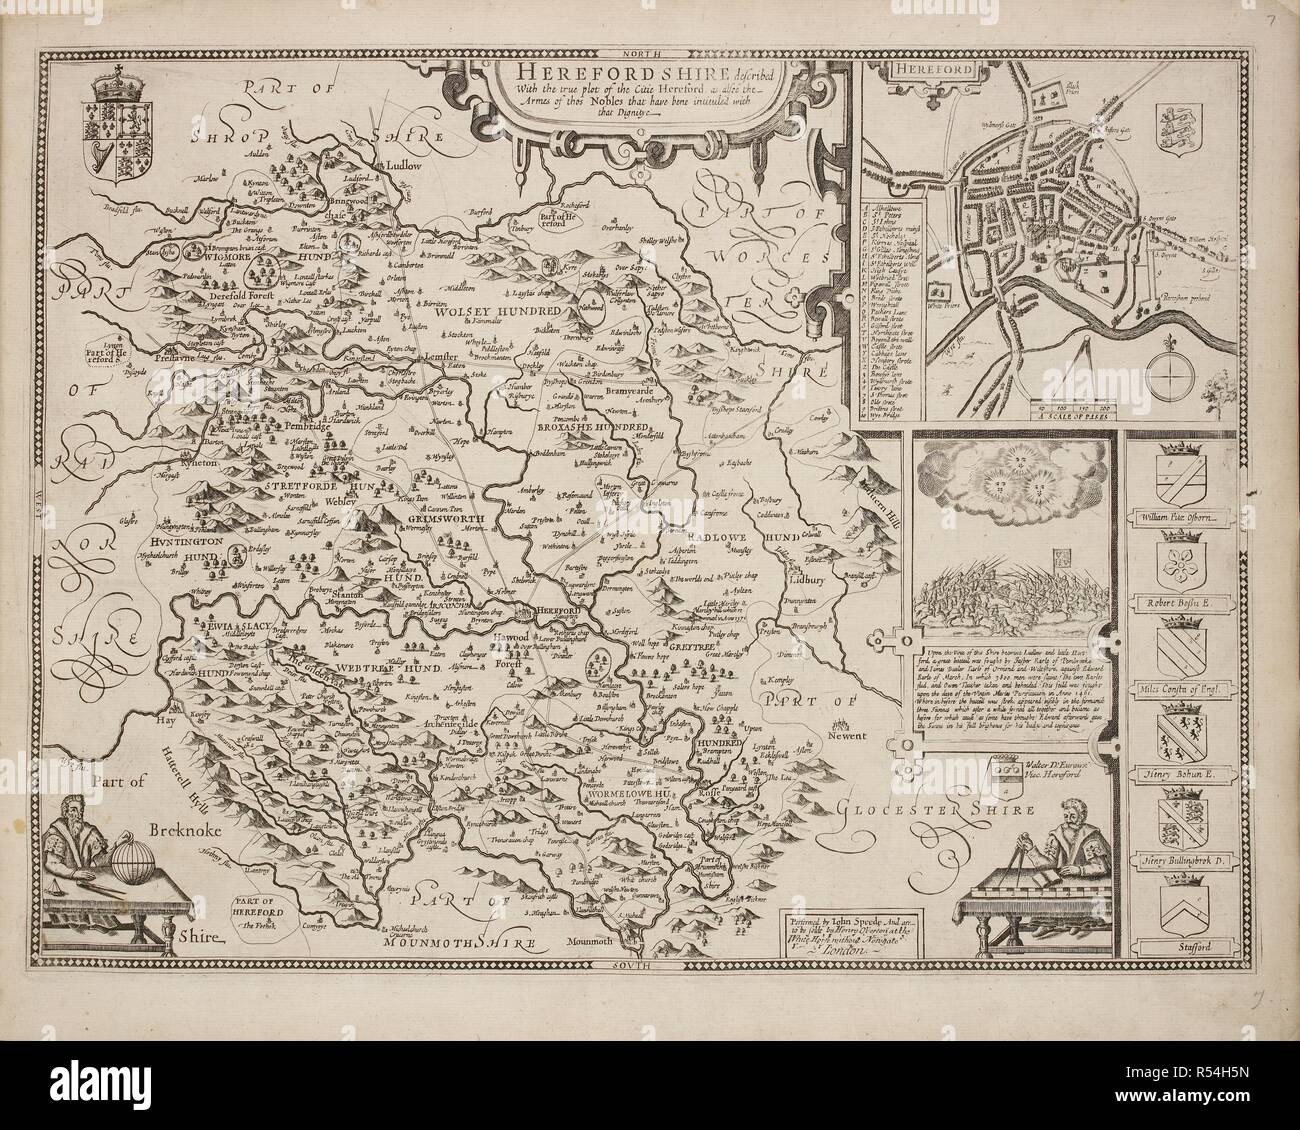 Un mapa de Herefordshire dibujado en 1714. . Una colección de 37 mapas de los condados de Inglaterra. Londres. H. Overton, 1714. Una colección de 37 mapas de los condados de Inglaterra, siendo las reimpresiones, de J. Speedâ€™s mapas, por Henry Overton, junto con los de P. Stent Reimpreso por John Overton, y mapas de Derbyshire y Yorkshire grabado por S. Nicholls. Fuente: Maps.145.c.9 7. Idioma: Inglaterra. Foto de stock